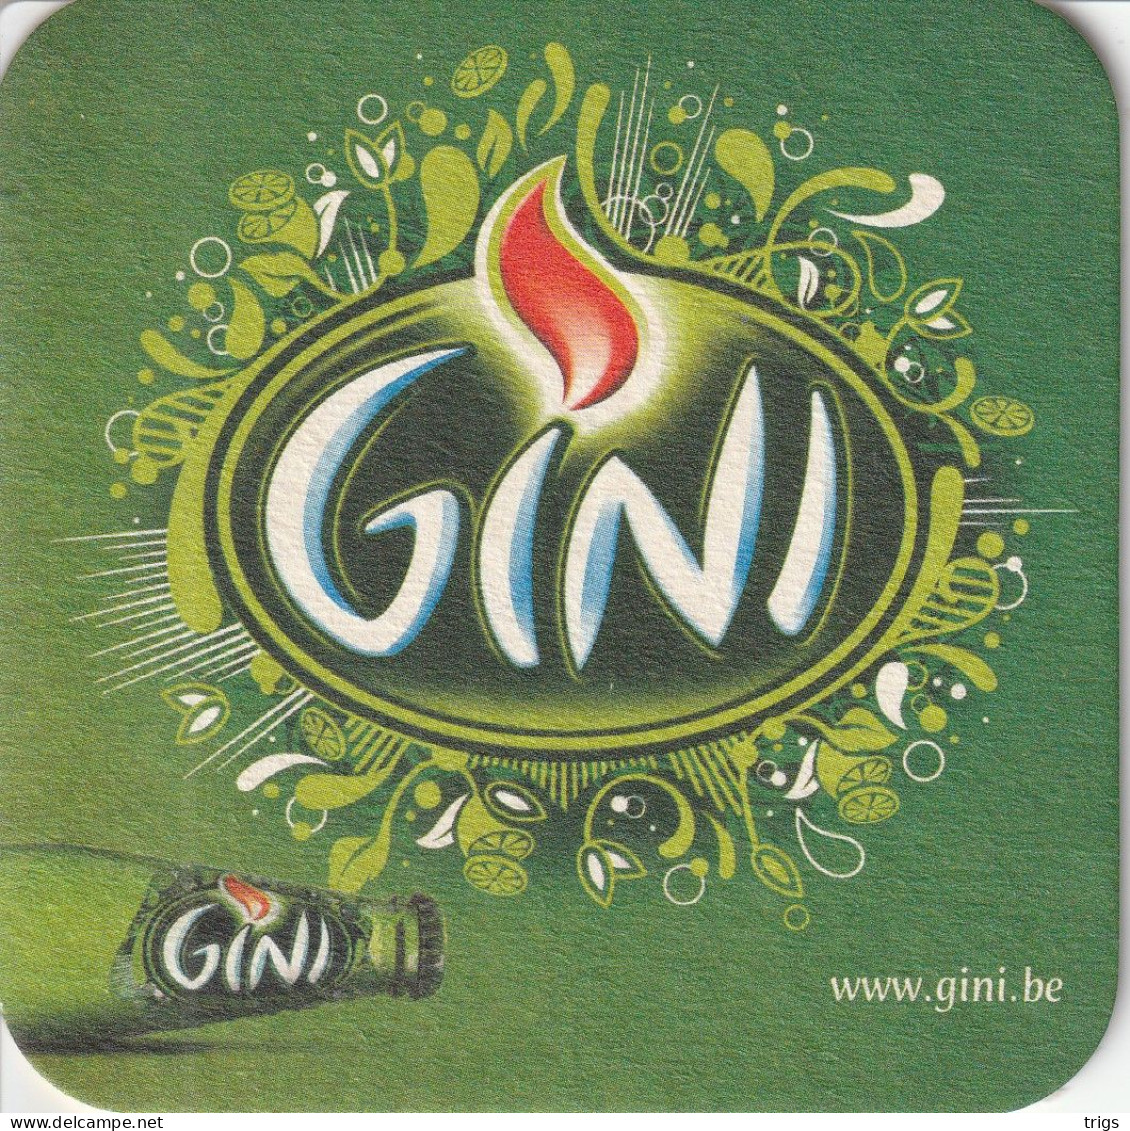 Gini - Sotto-boccale